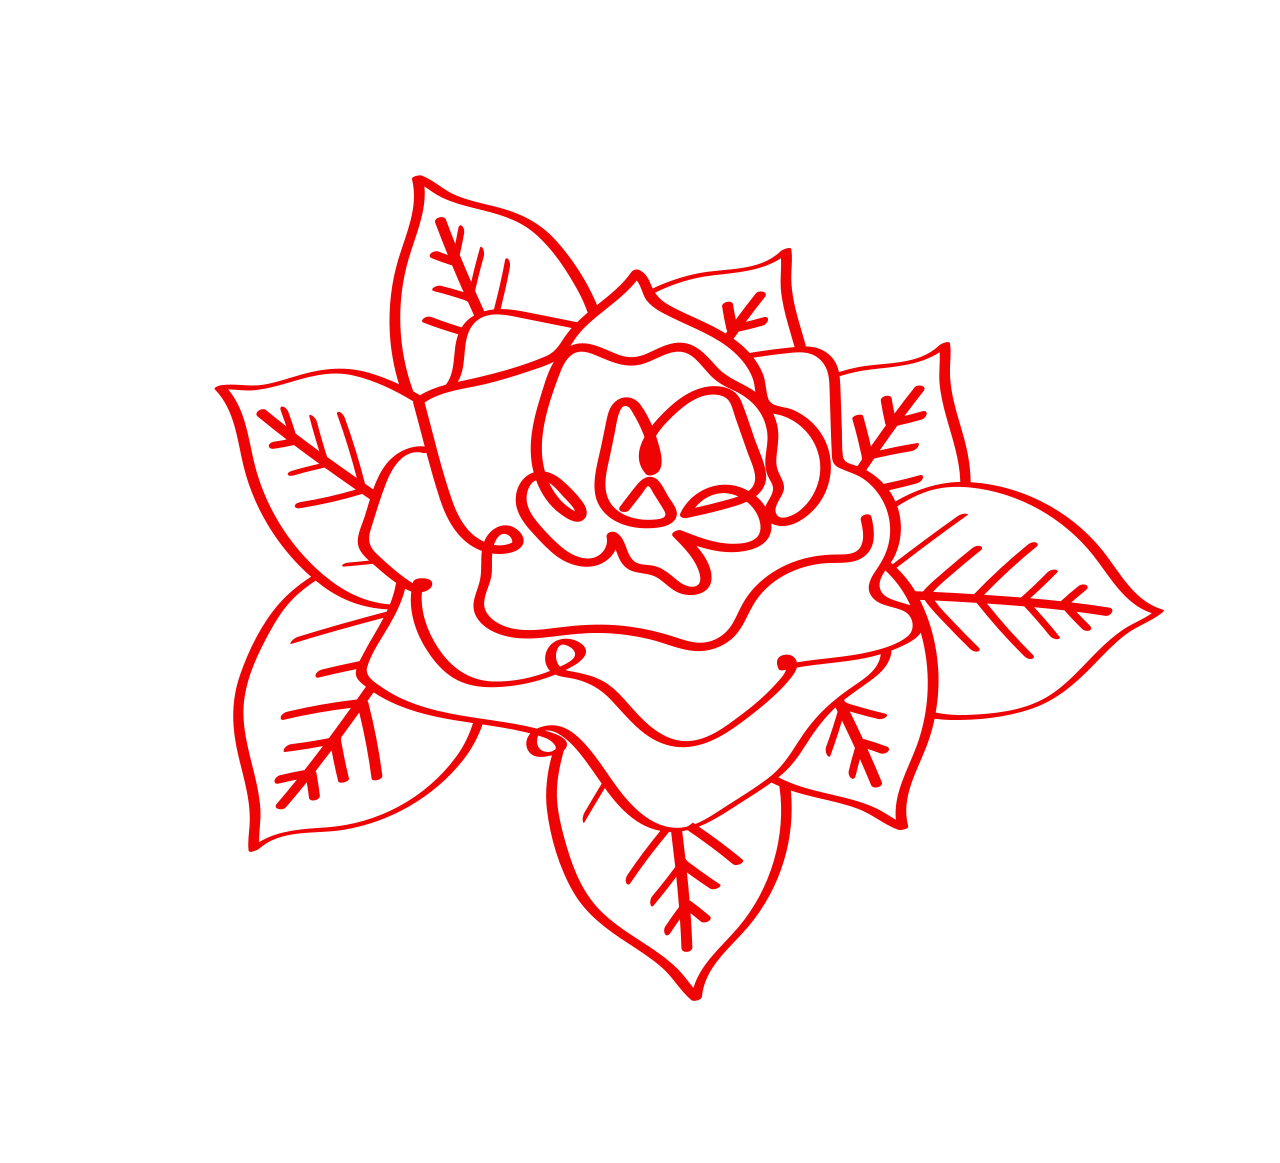 Spokes & Spurs Jewelry's logo